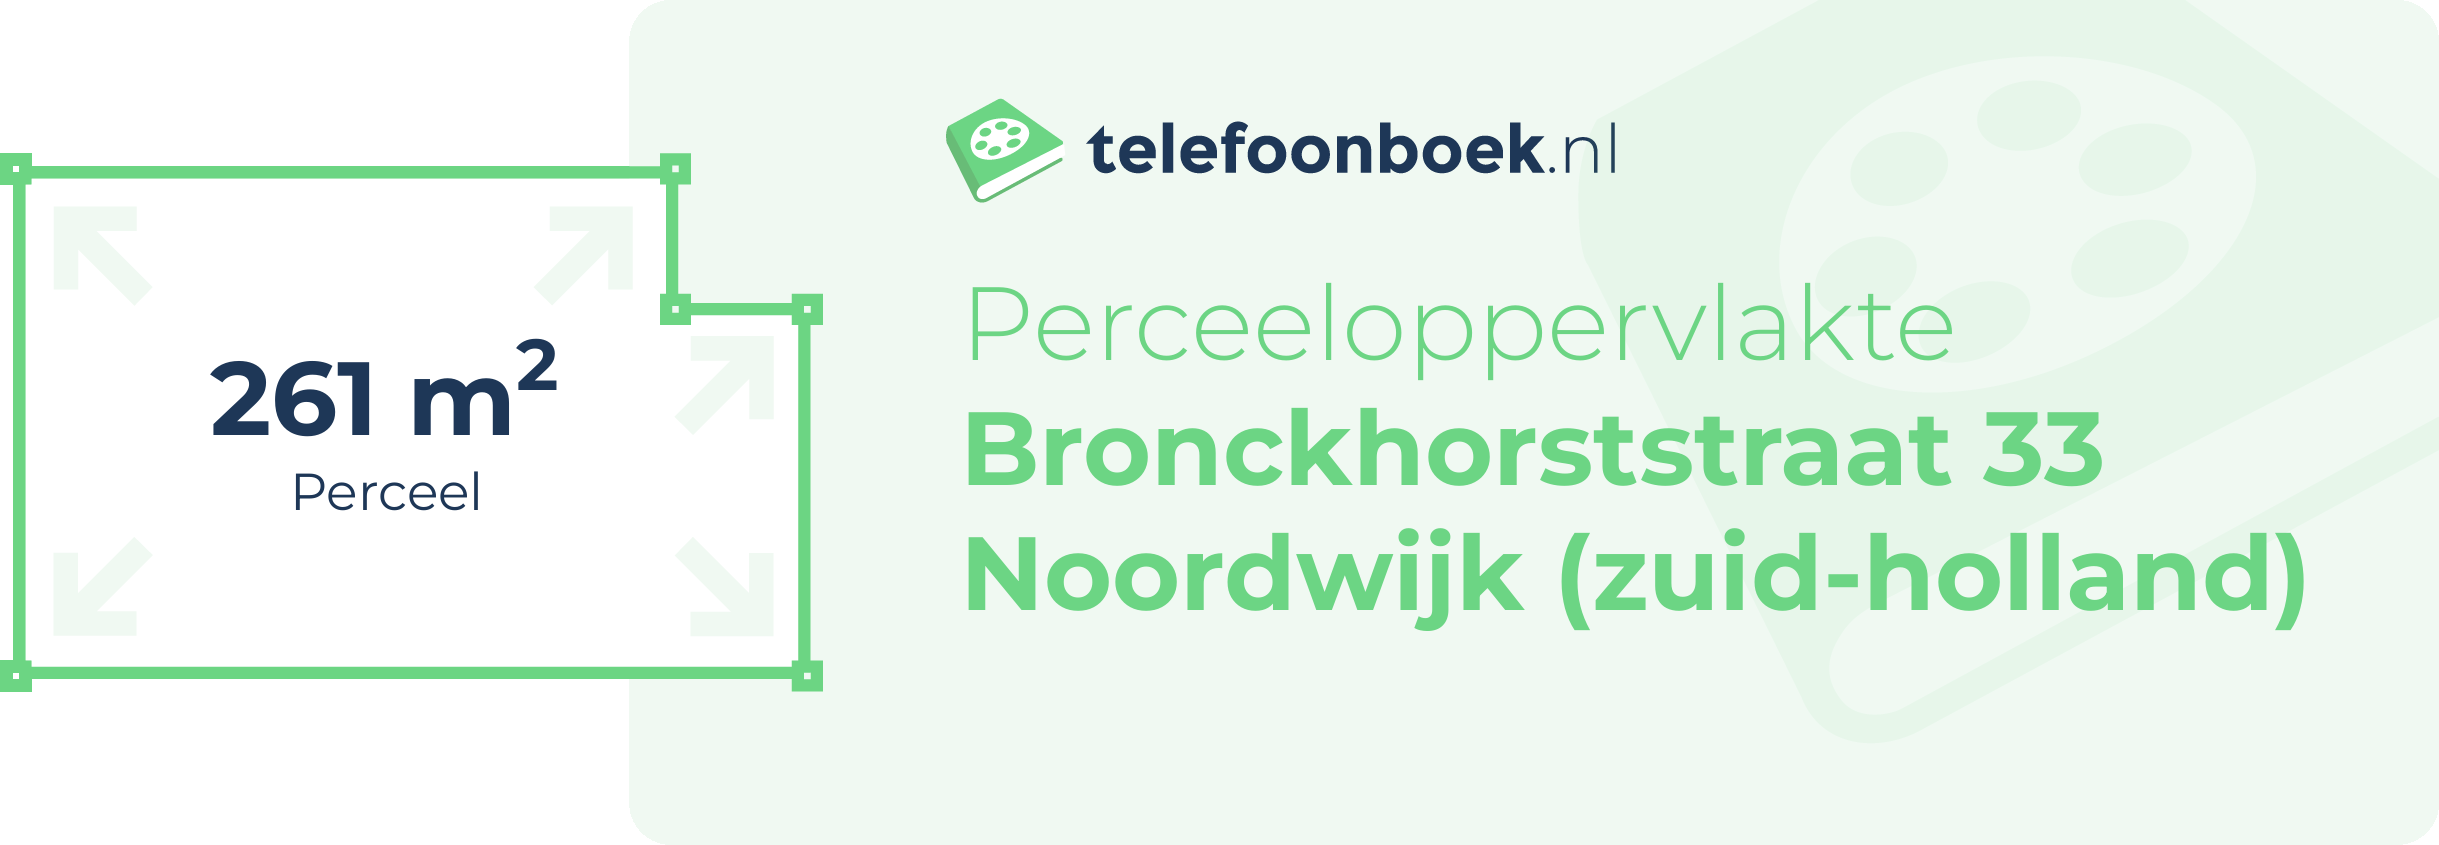 Perceeloppervlakte Bronckhorststraat 33 Noordwijk (Zuid-Holland)